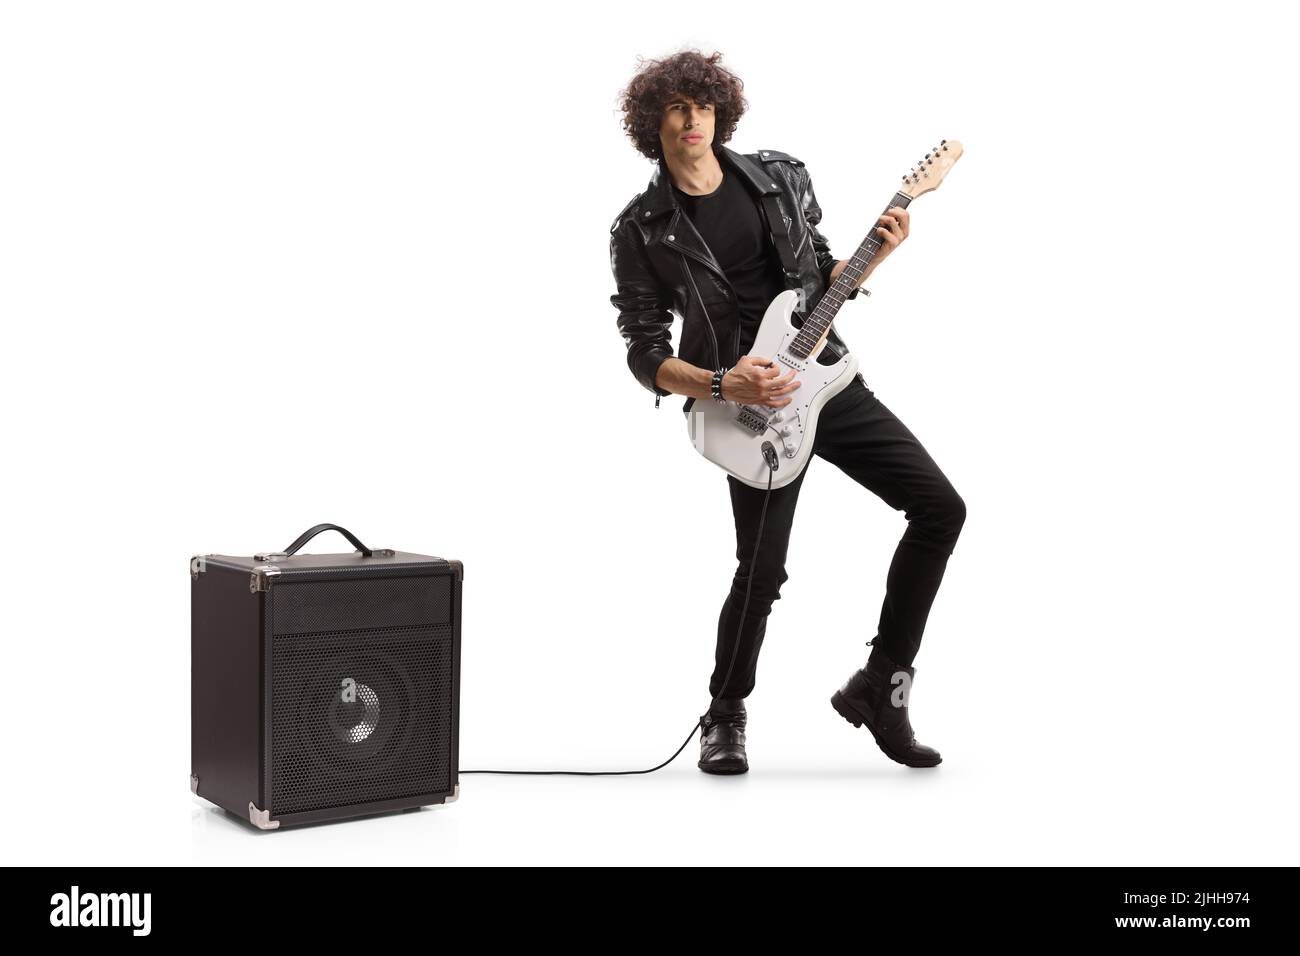 Ritratto completo di un giovane musicista rock che suona una chitarra collegata ad un amplificatore isolato su sfondo bianco Foto Stock